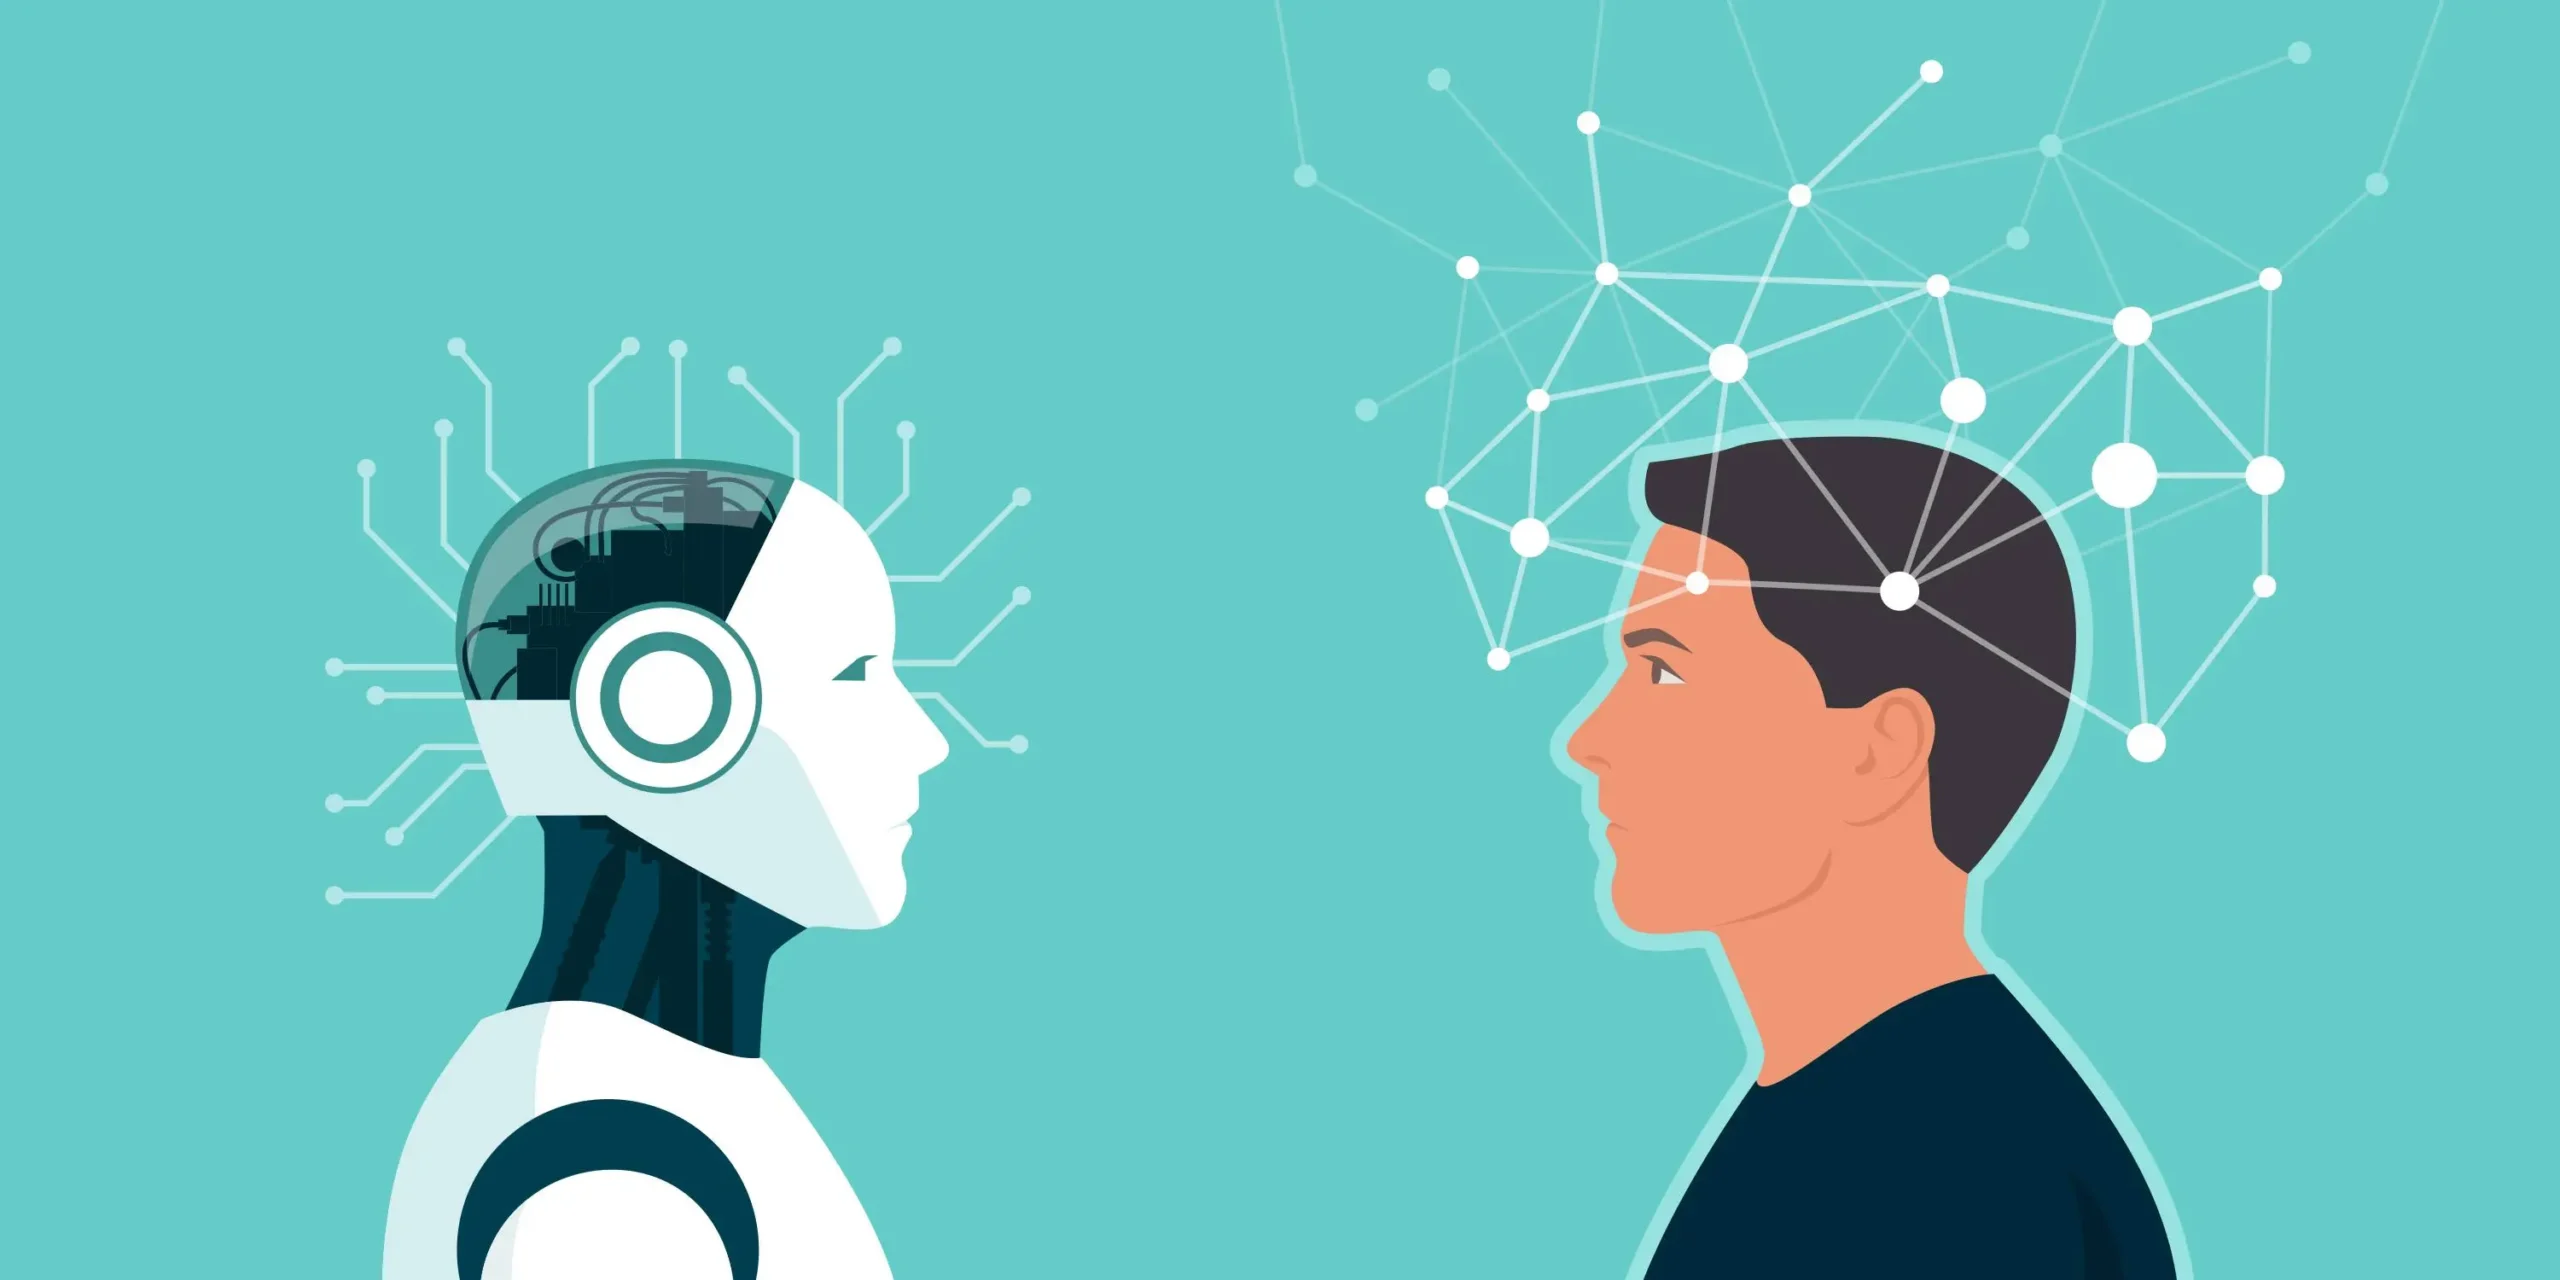 inteligencia artificial estrecha - Cuáles son los ejemplos de IA estrecha